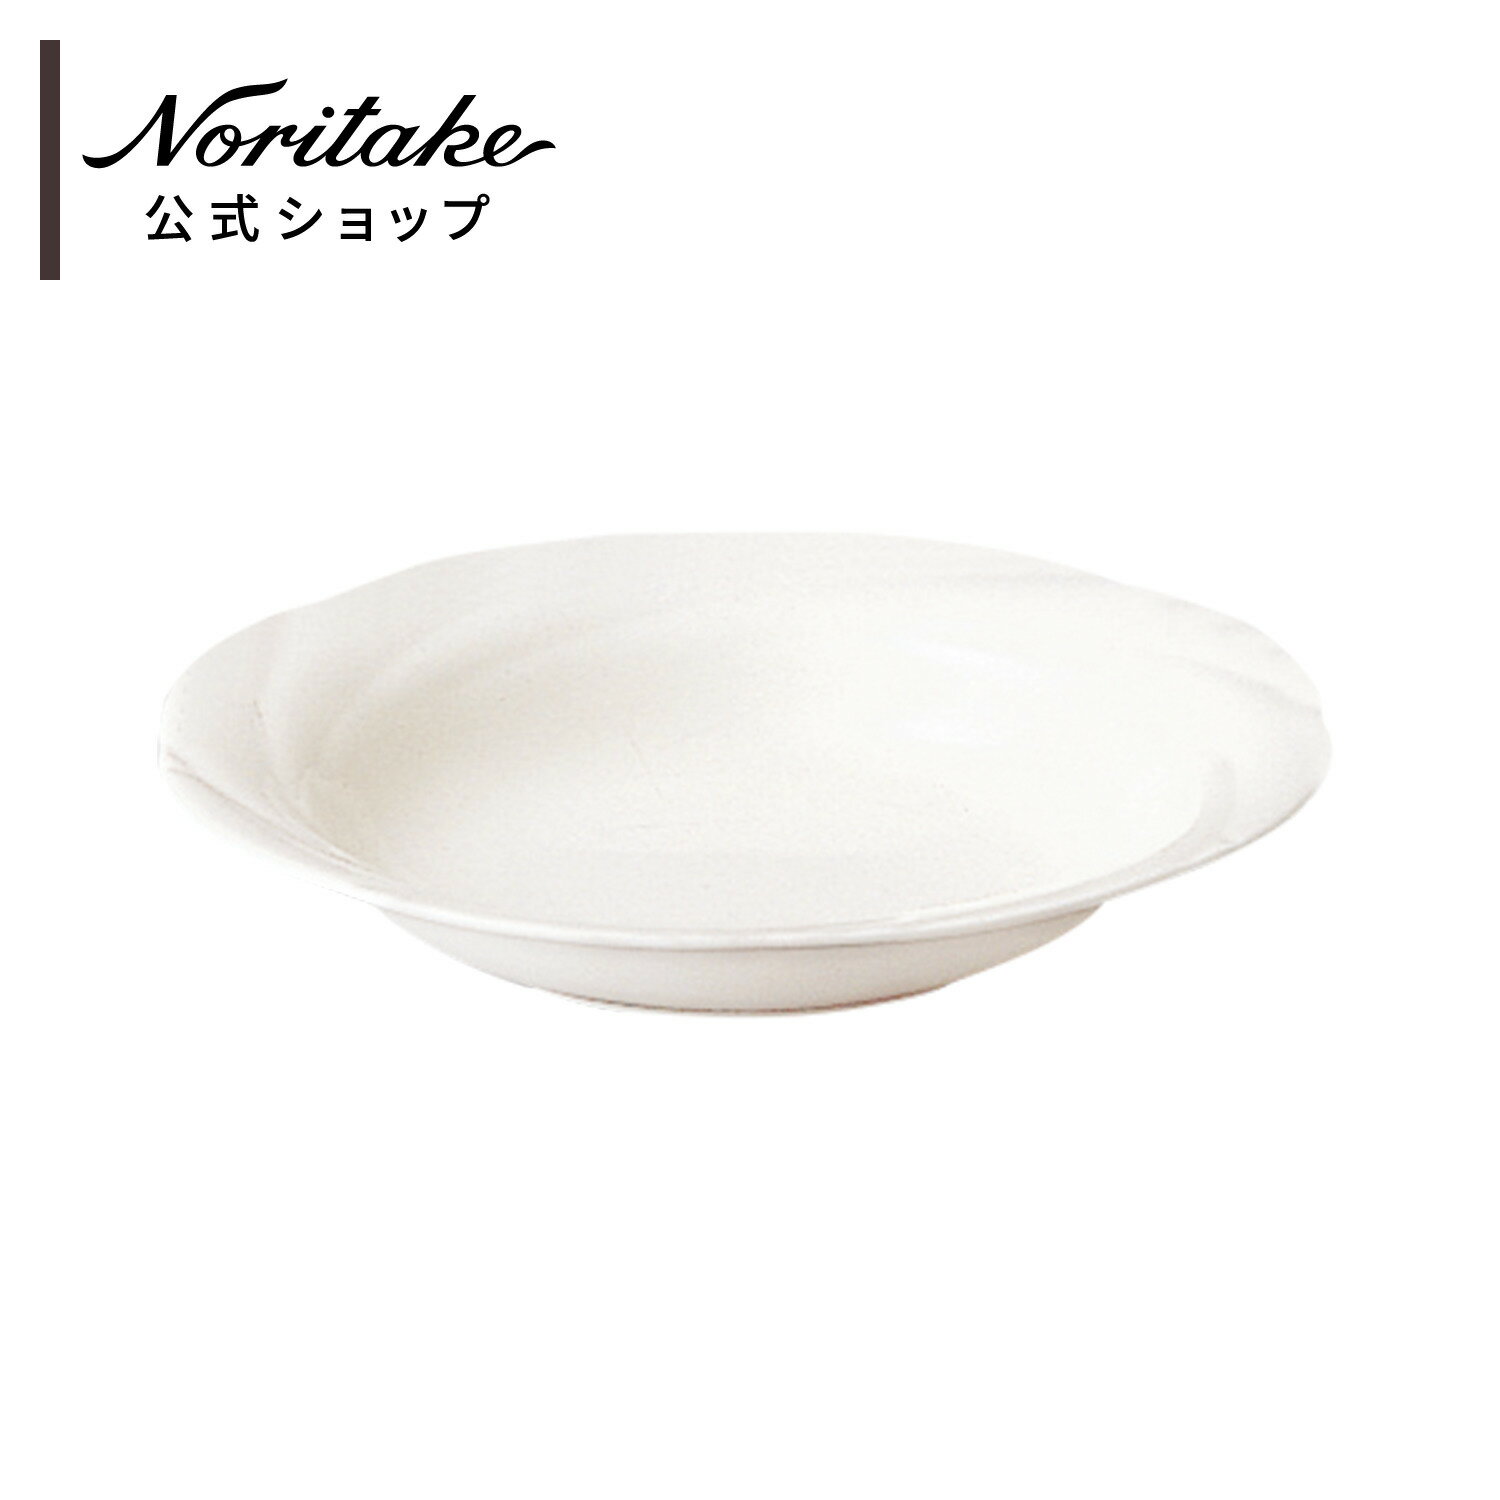 ノリタケ アンサンブルホワイト 22.5cmディーププレート ( 電子レンジ対応 食洗機対応 カレー皿 パスタ皿 シチュー皿 新生活 日常使い 白 おしゃれ